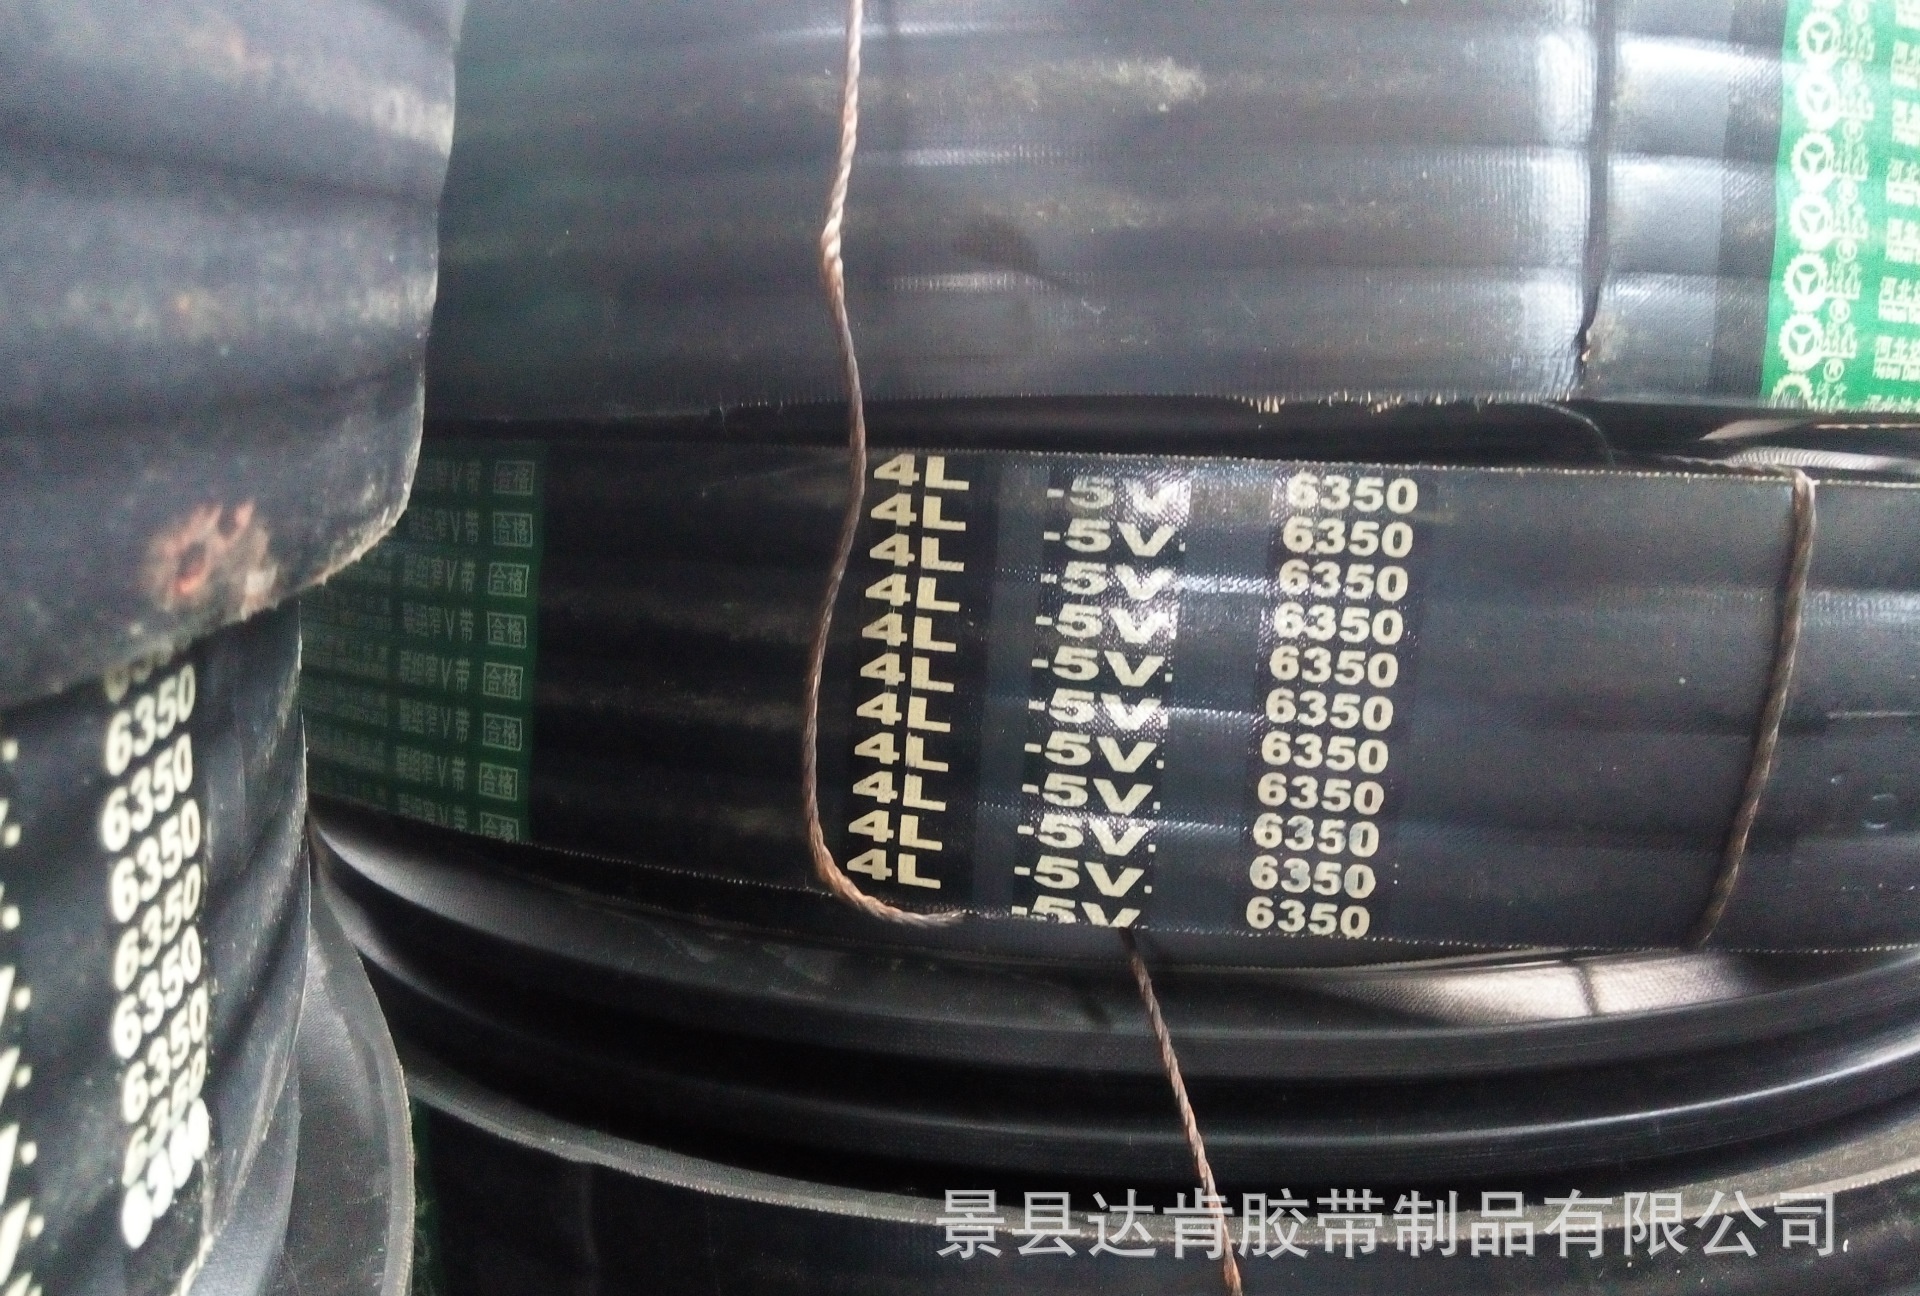 联组橡胶窄V带5V4L6350适用于抽油机工程机械传动使用